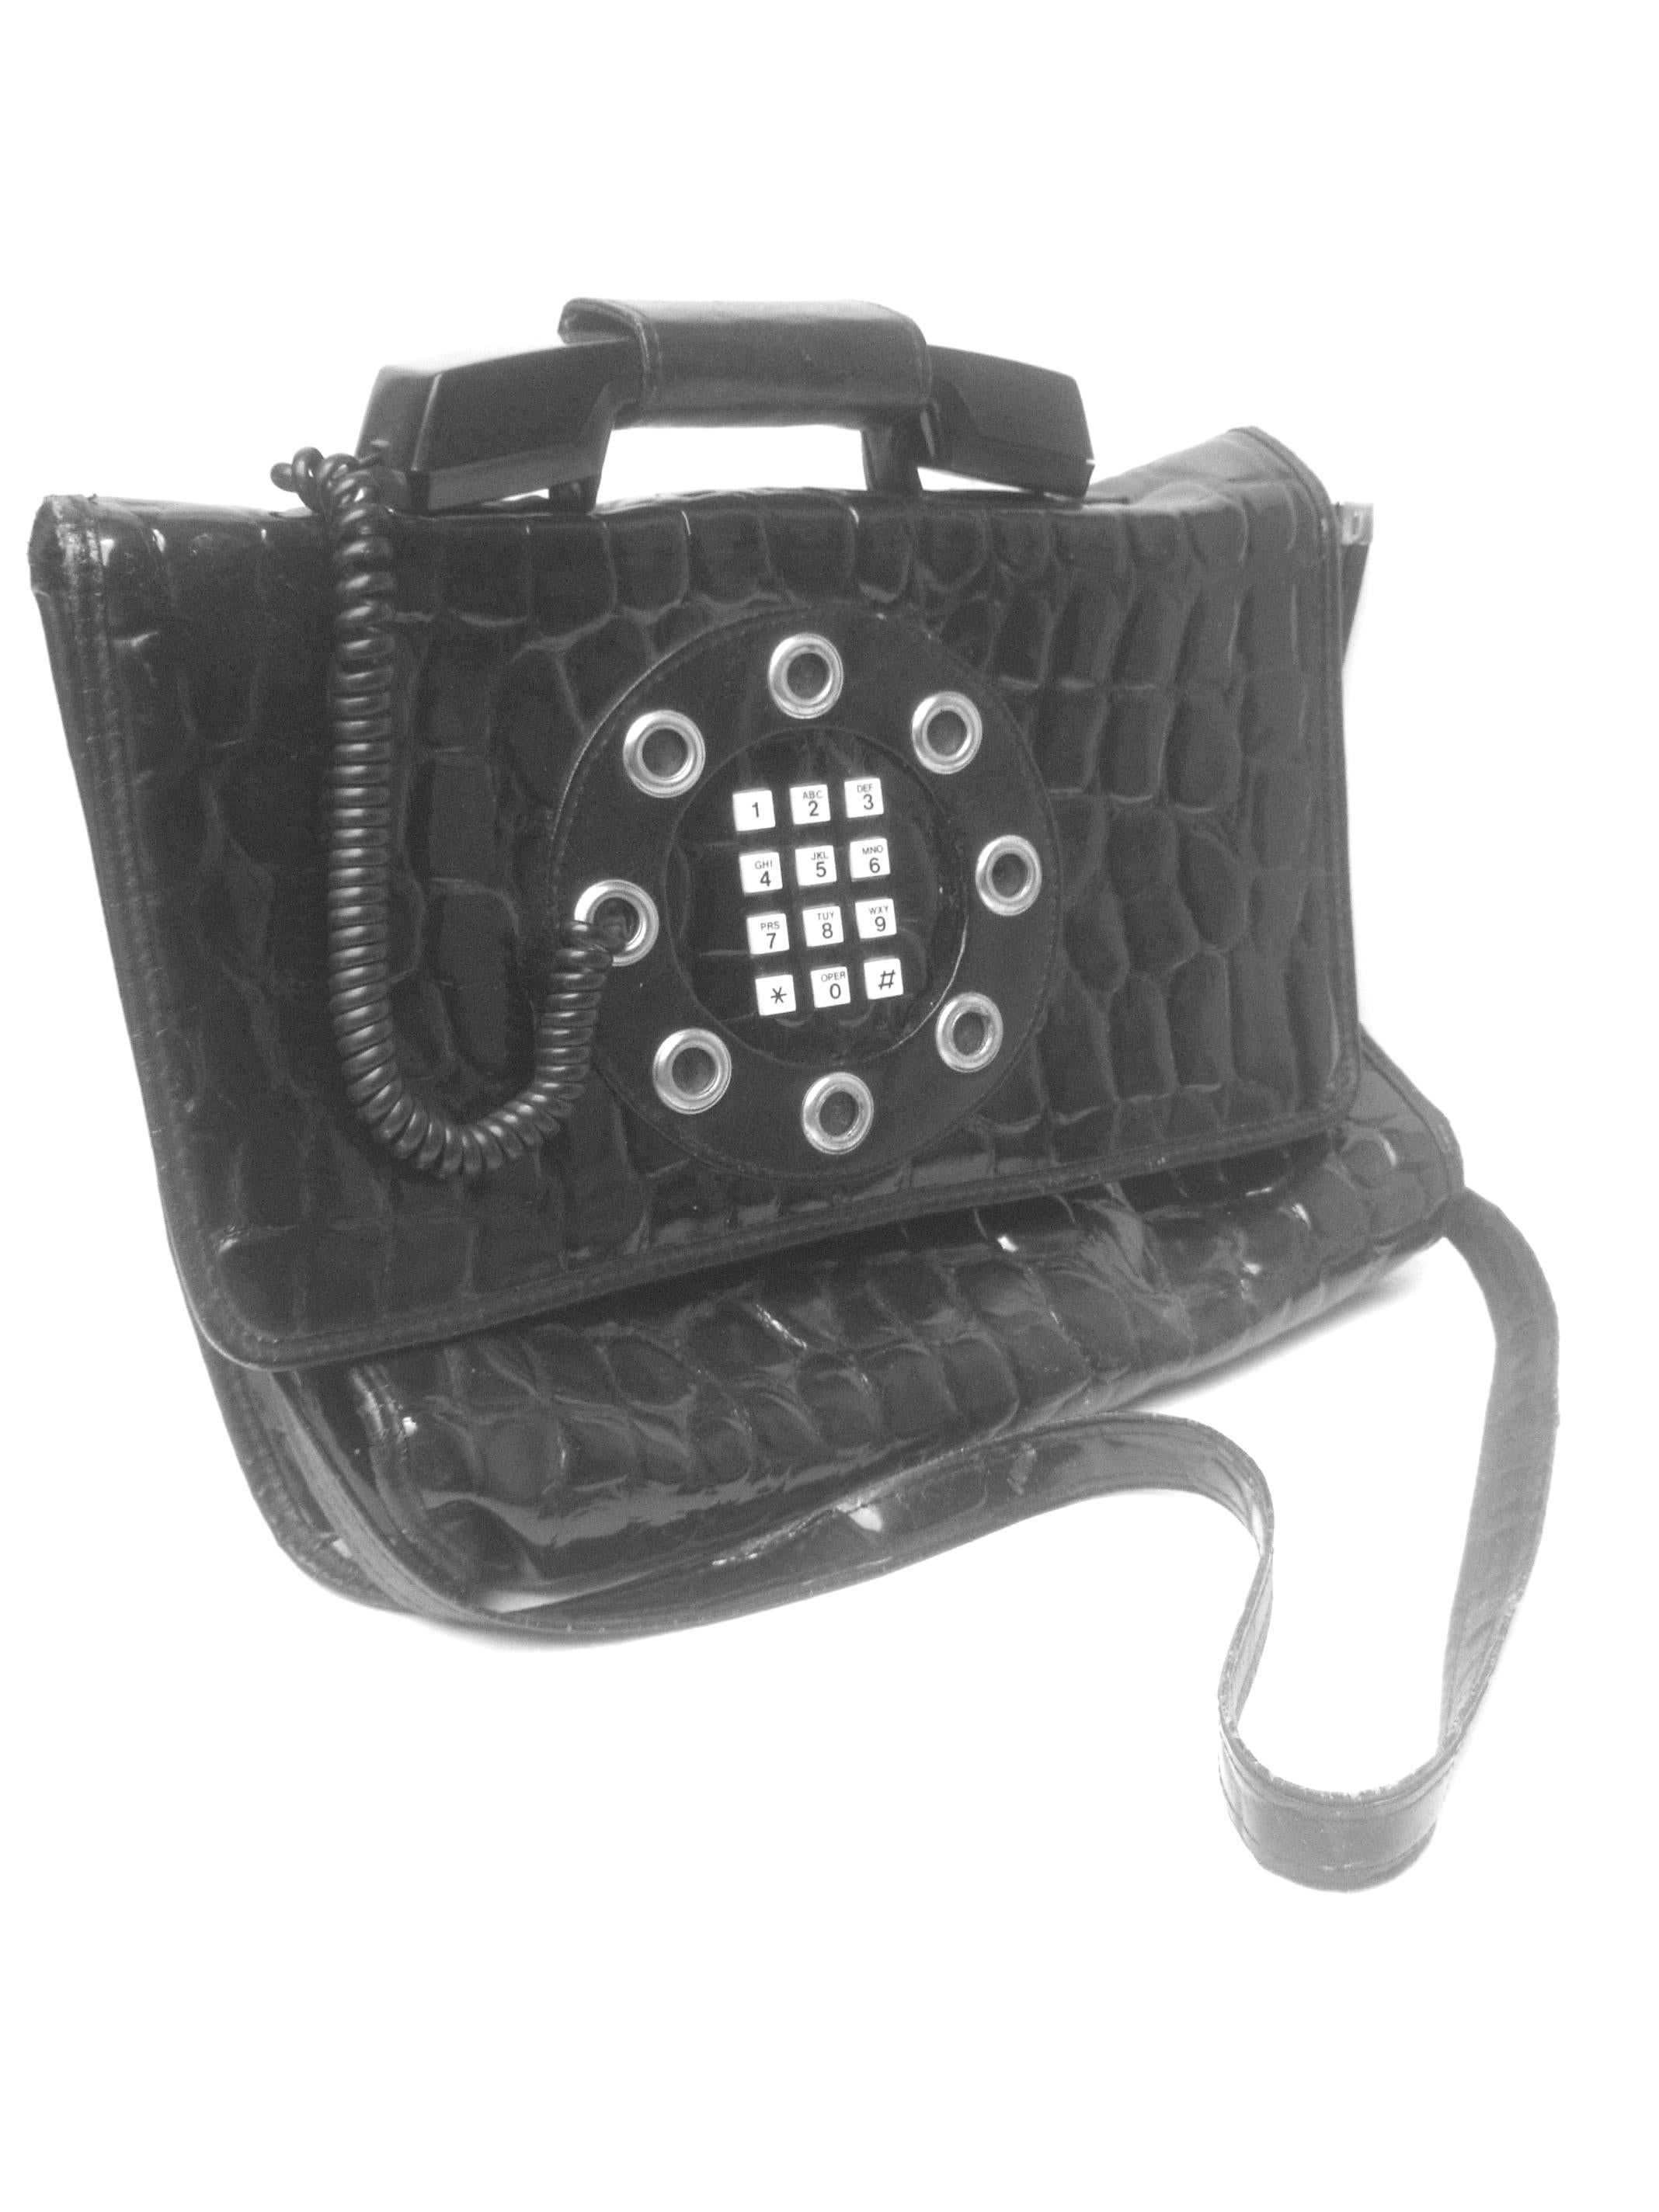 Mod Embossed Black Vinyl Telephone Shoulder Bag c 1980s For Sale 4